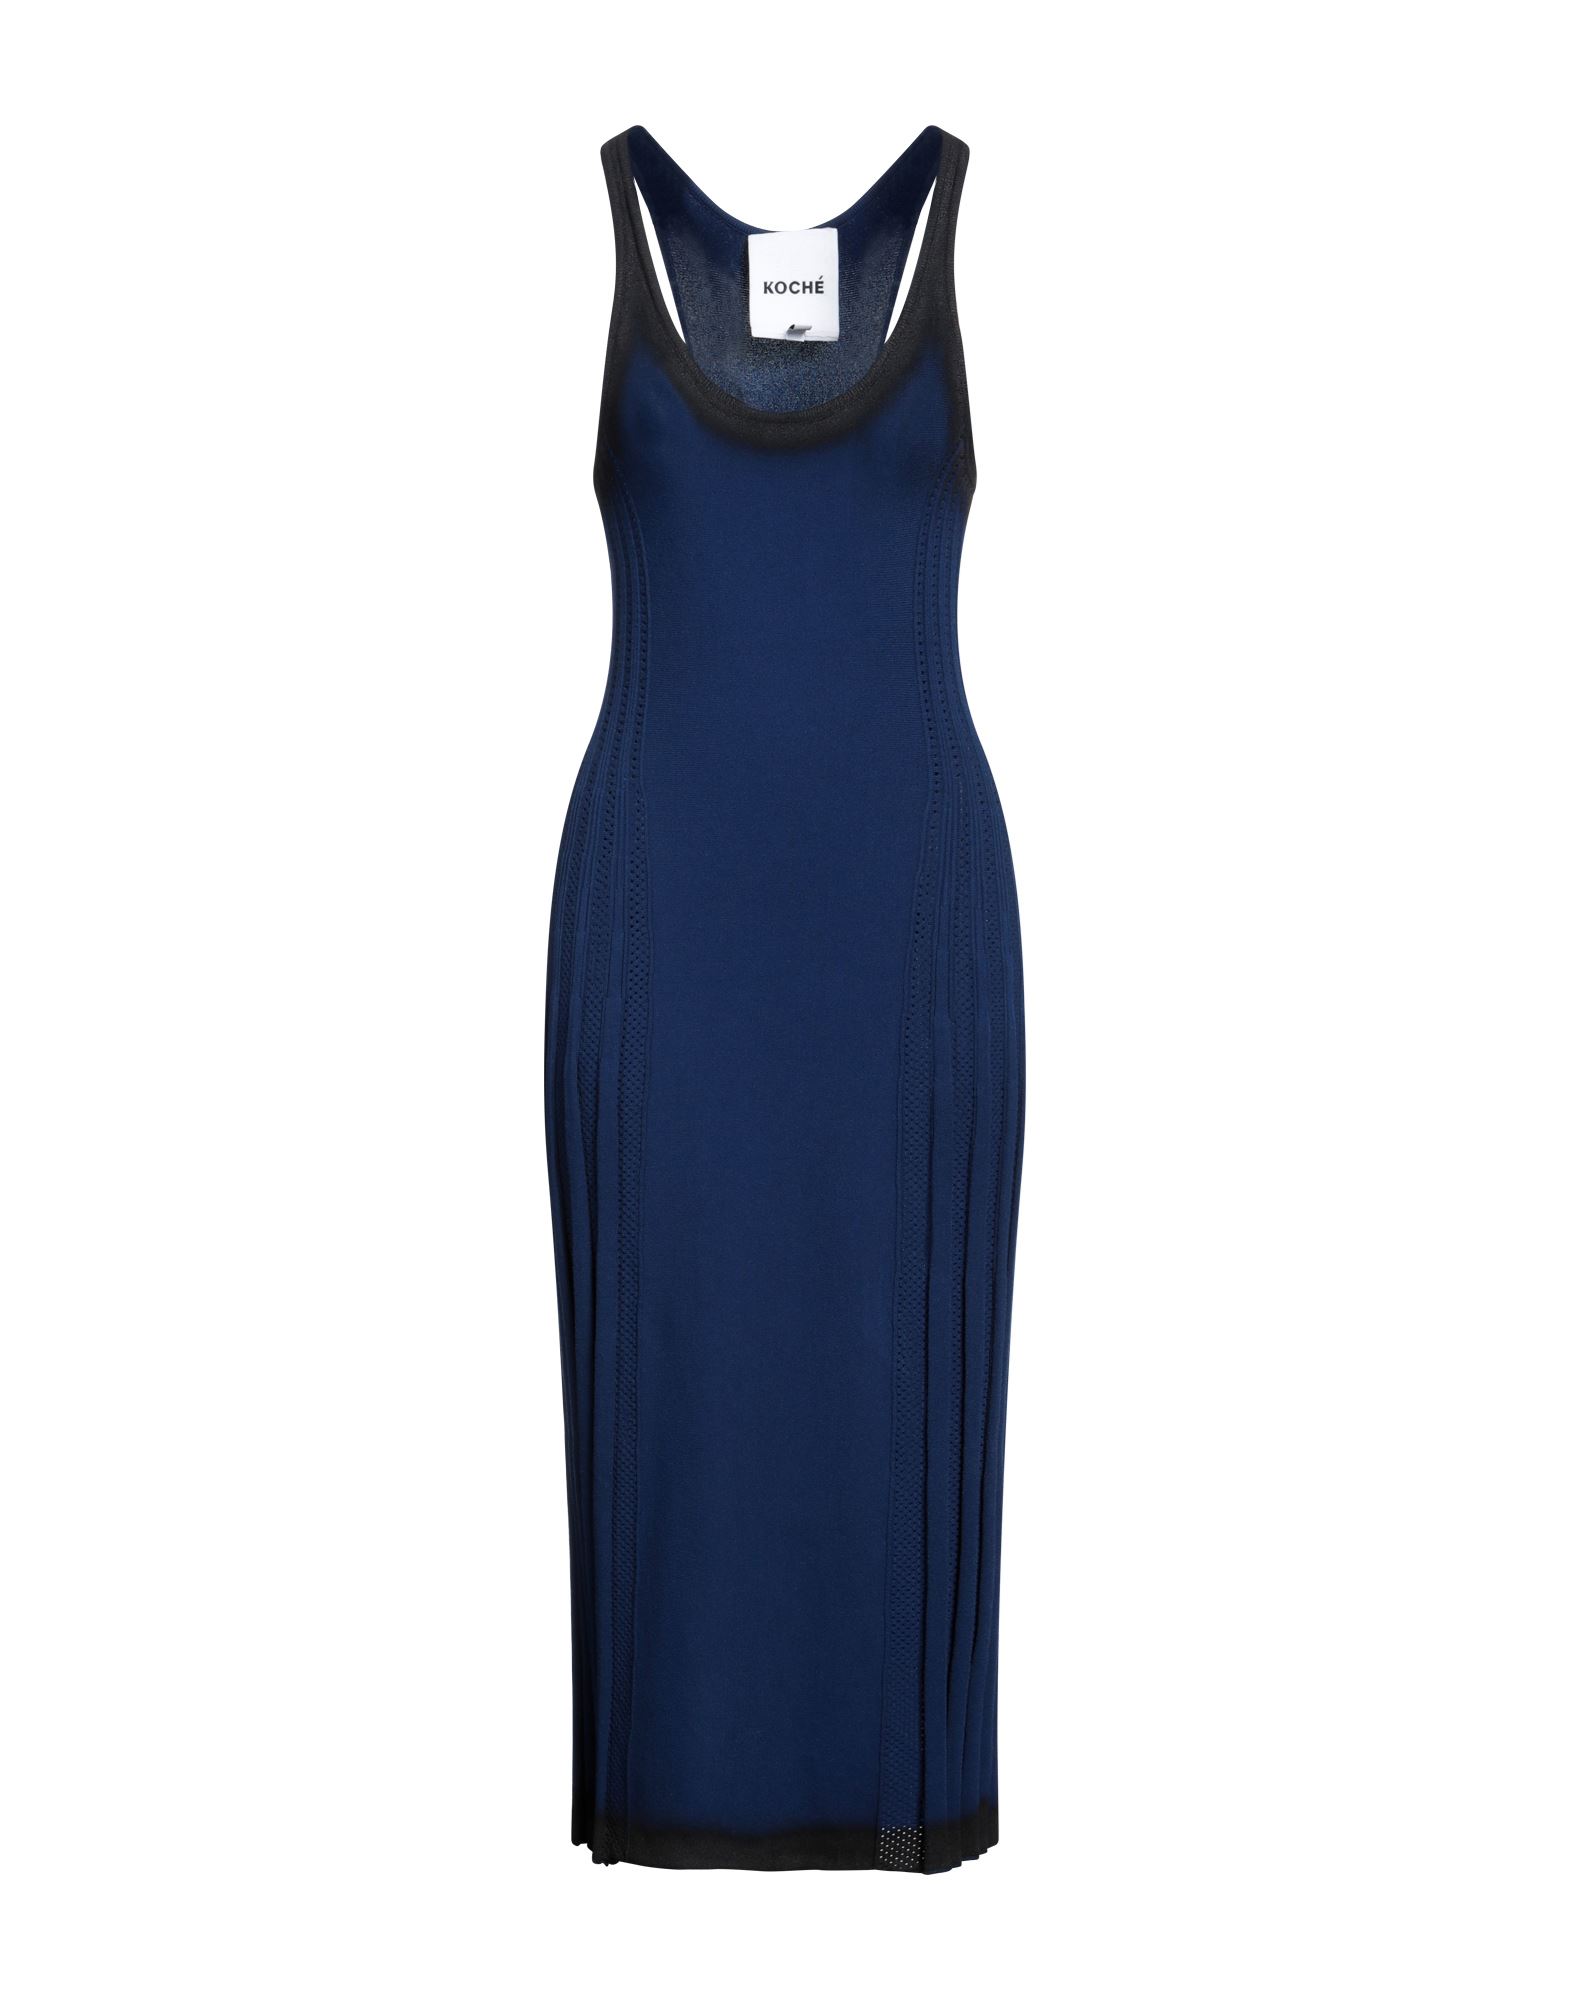 Koché Woman Midi Dress Navy Blue Size S Viscose, Polyester